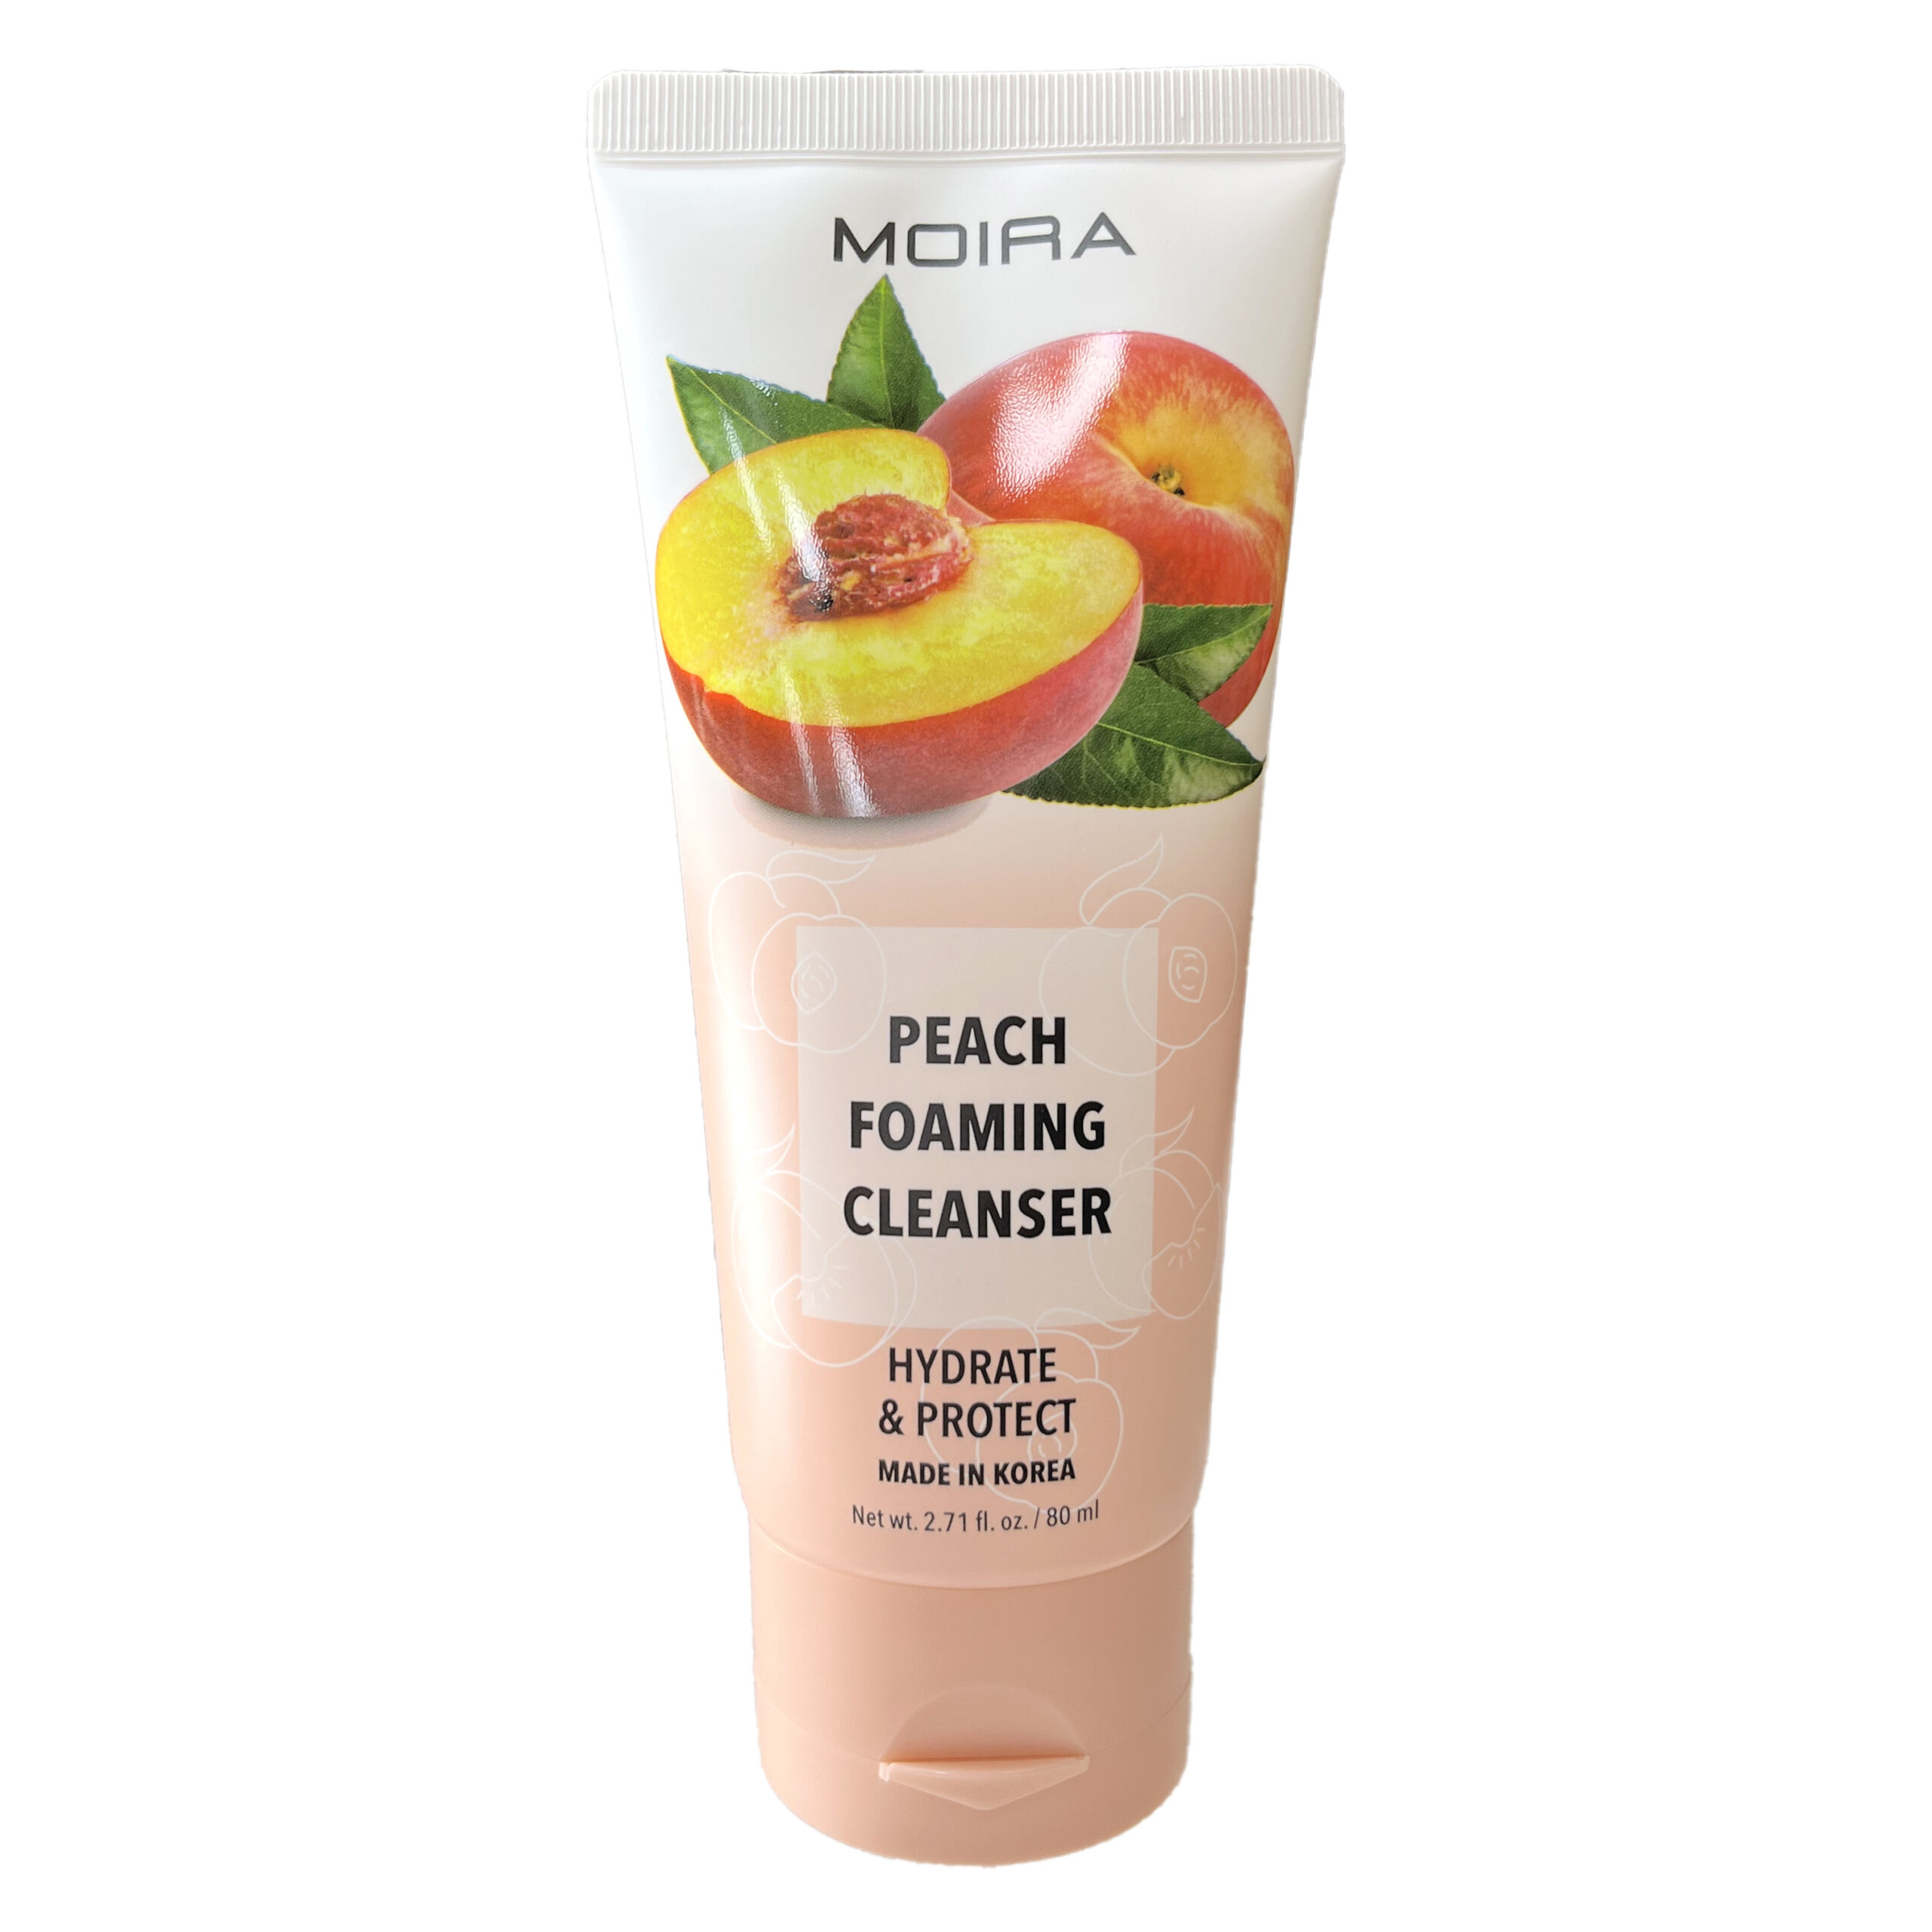 MOIRA Peach Foaming Cleanser es una fórmula suave adecuada para todo tipo de piel. Con una infusión de extracto de melocotón, este limpiador mejora la textura de la piel y la protege de la contaminación.